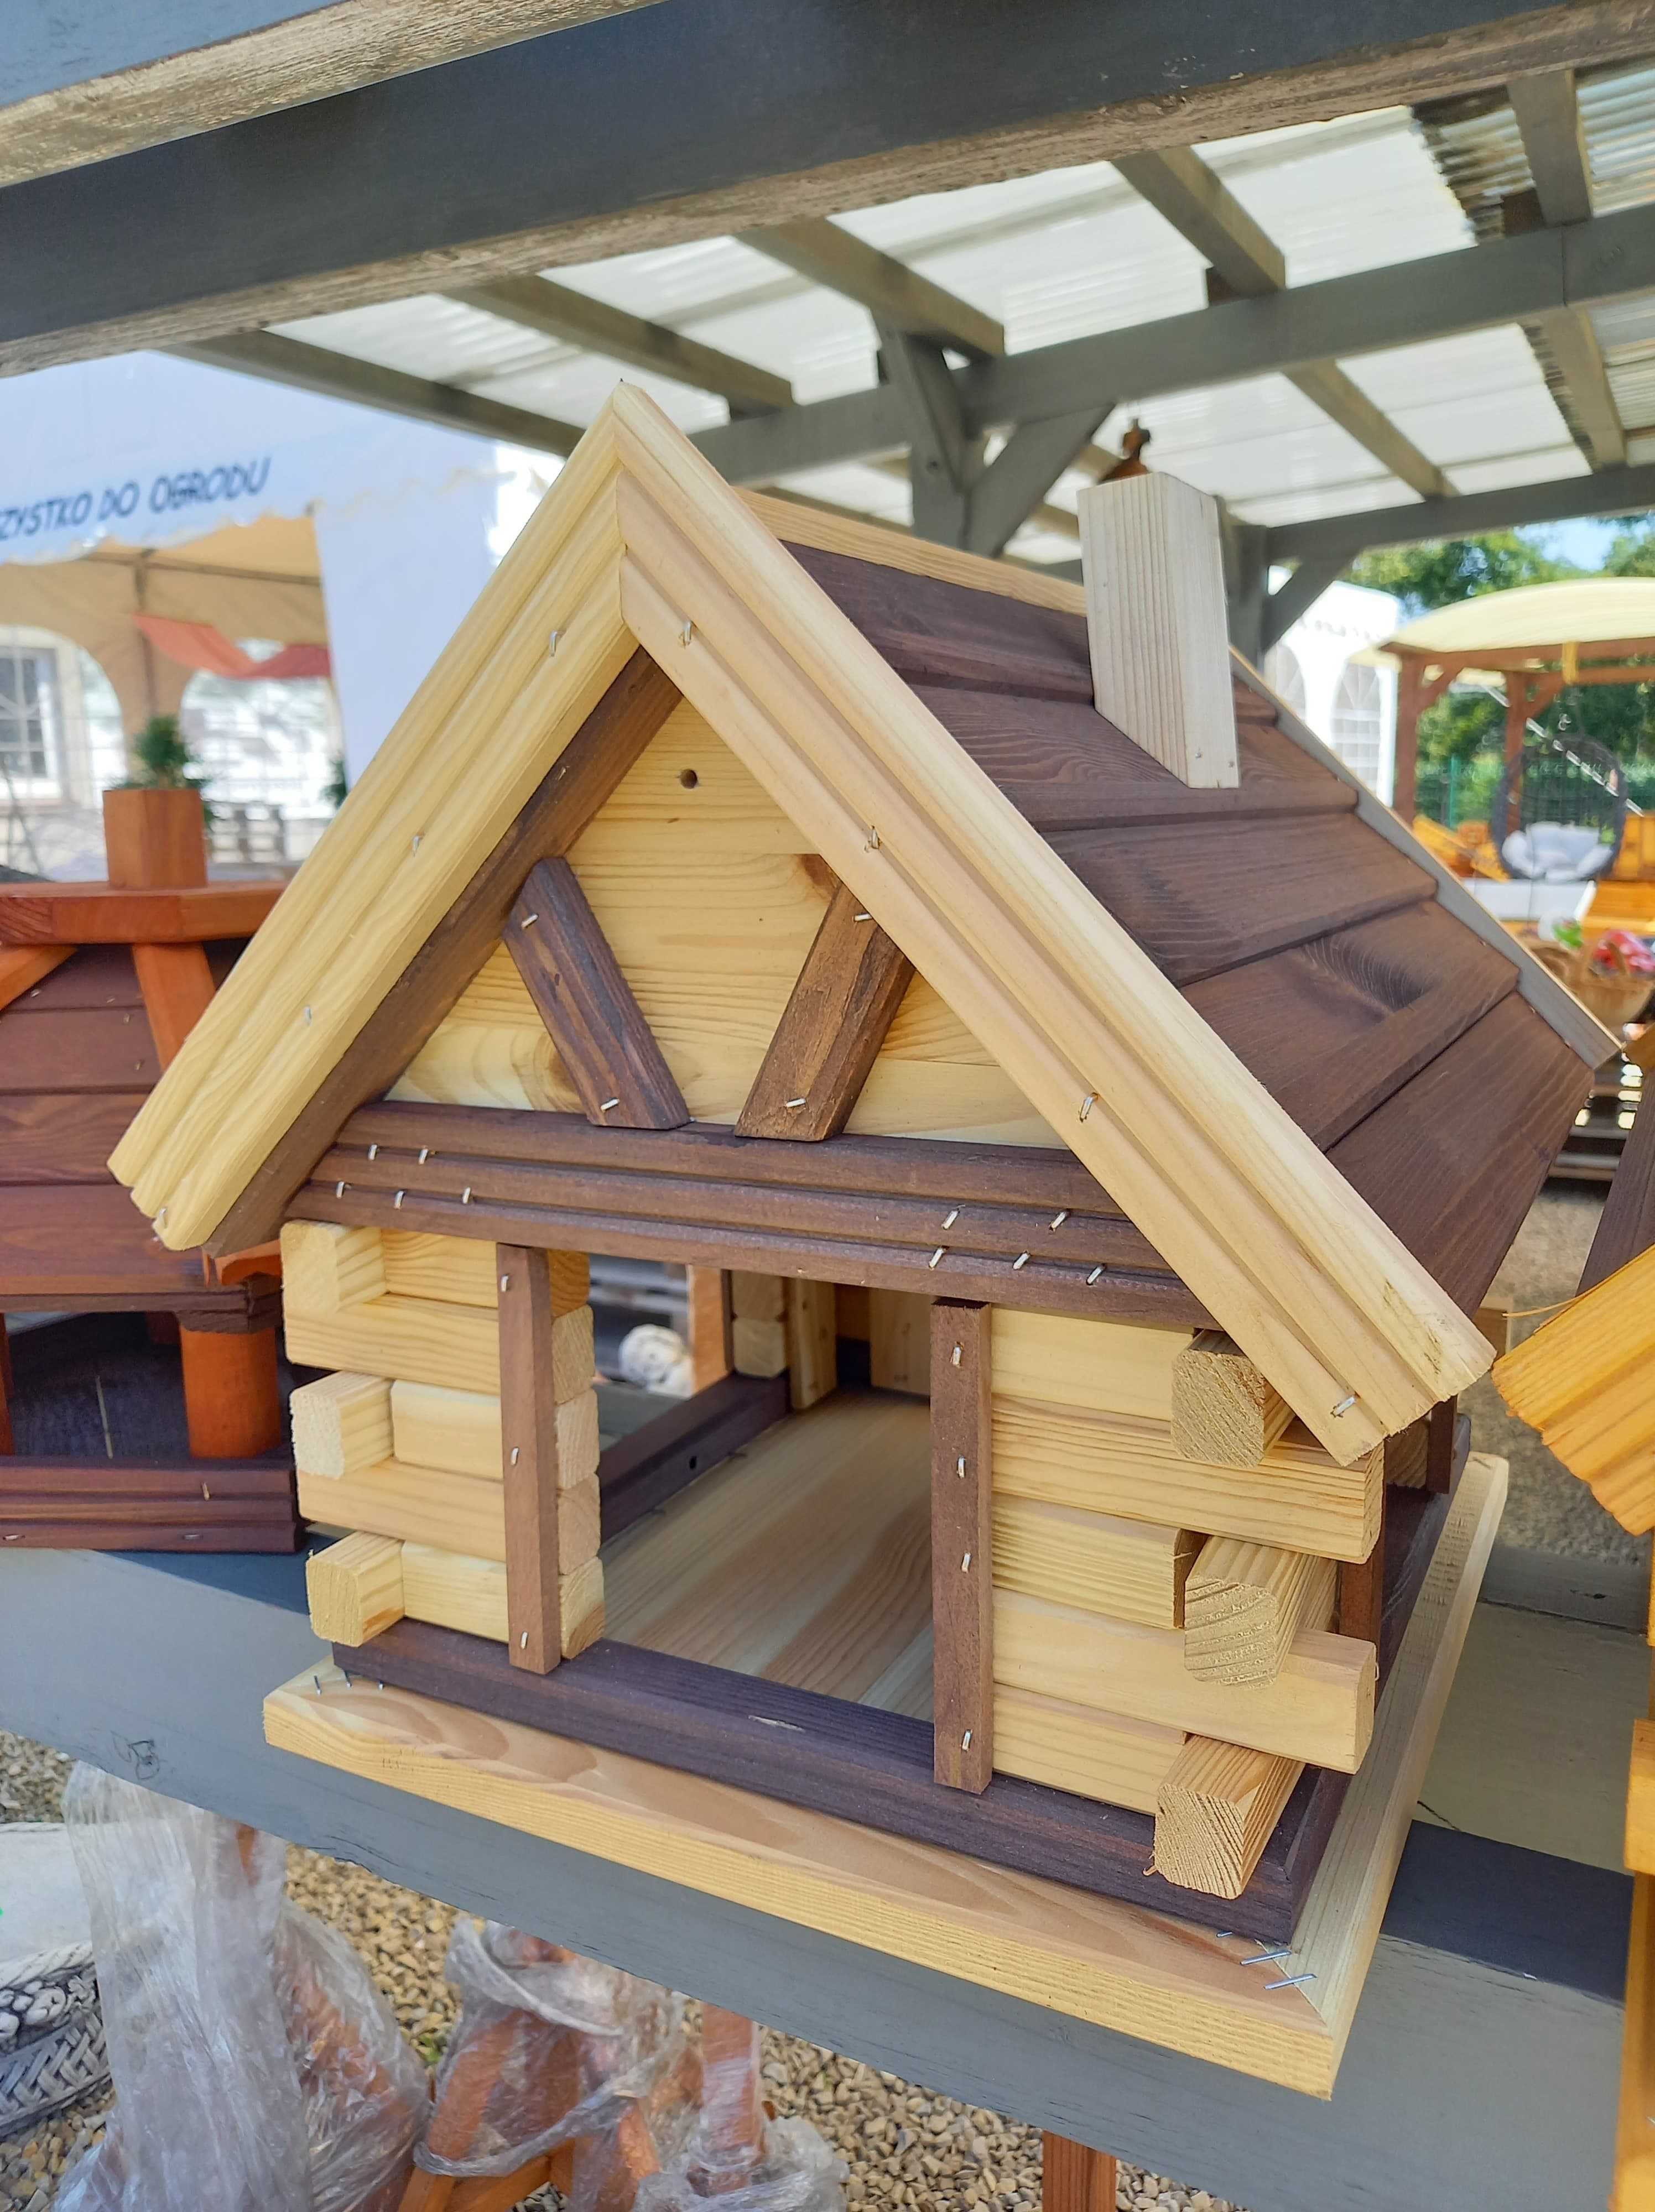 Karmnik drewniany dla ptaków do ogrodu CHATKA domek